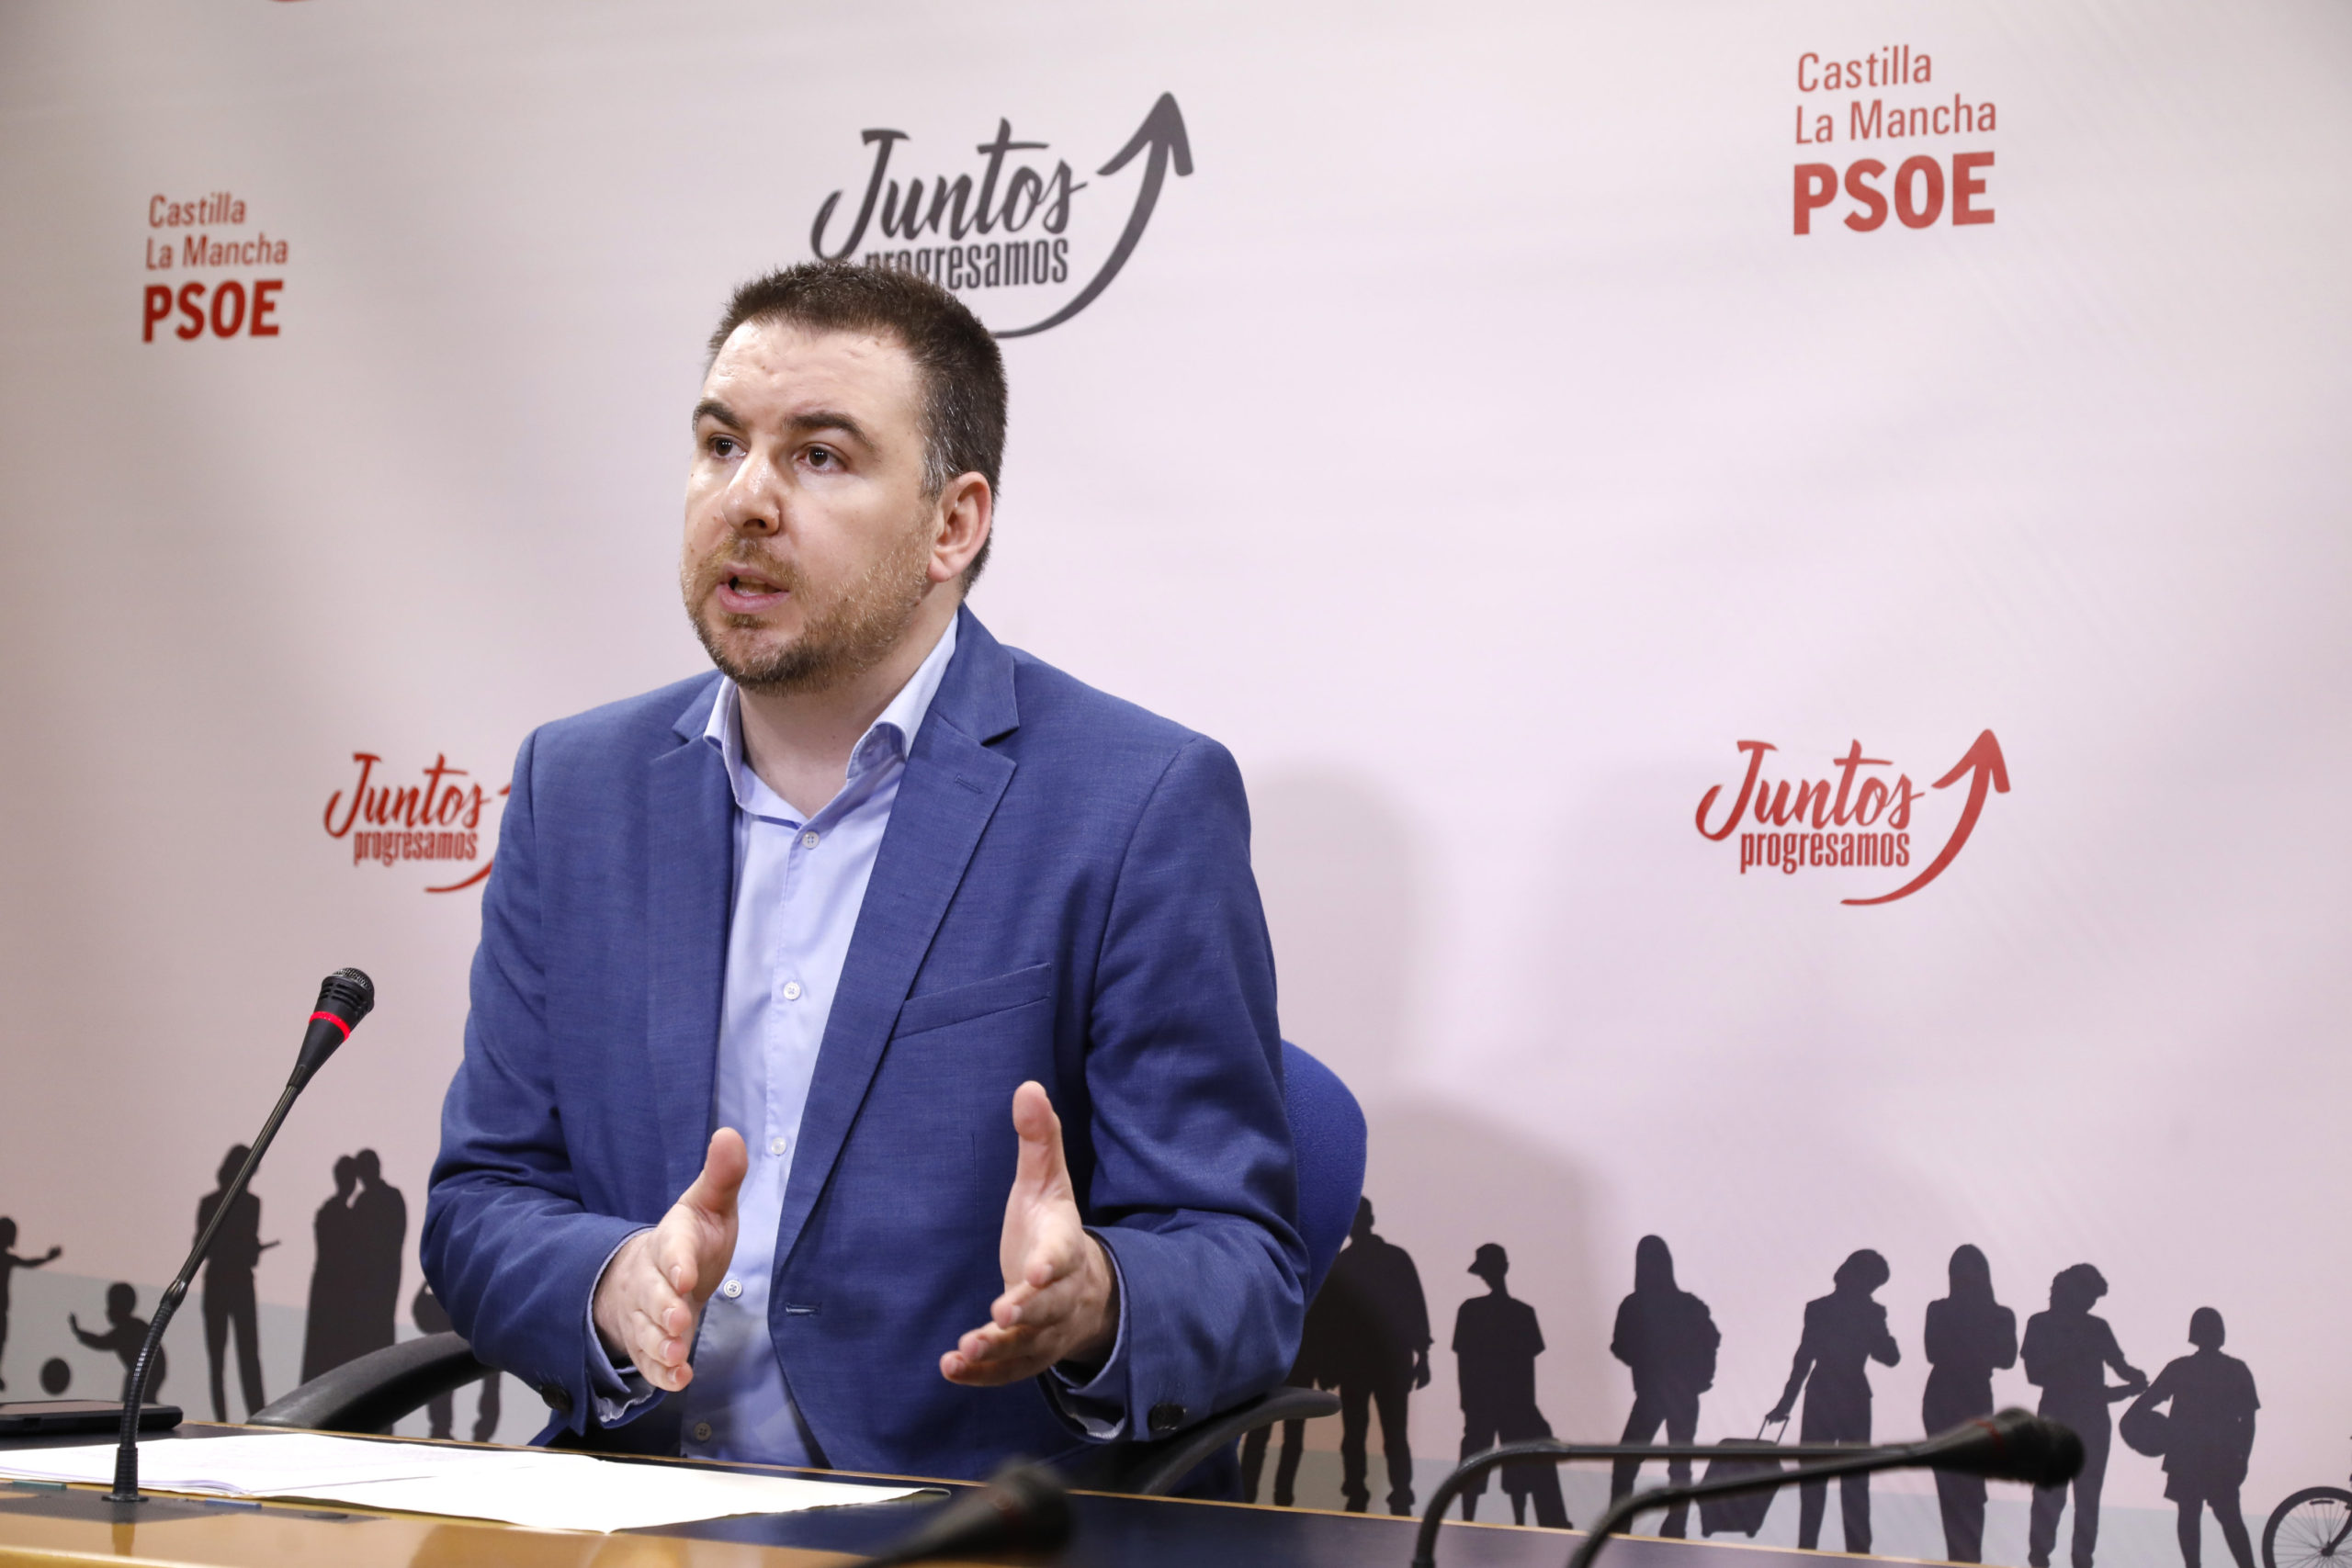 El PSOE pide al PP que imite “la oposición constructiva” de CyL, que ha sentado las bases para un acuerdo de región